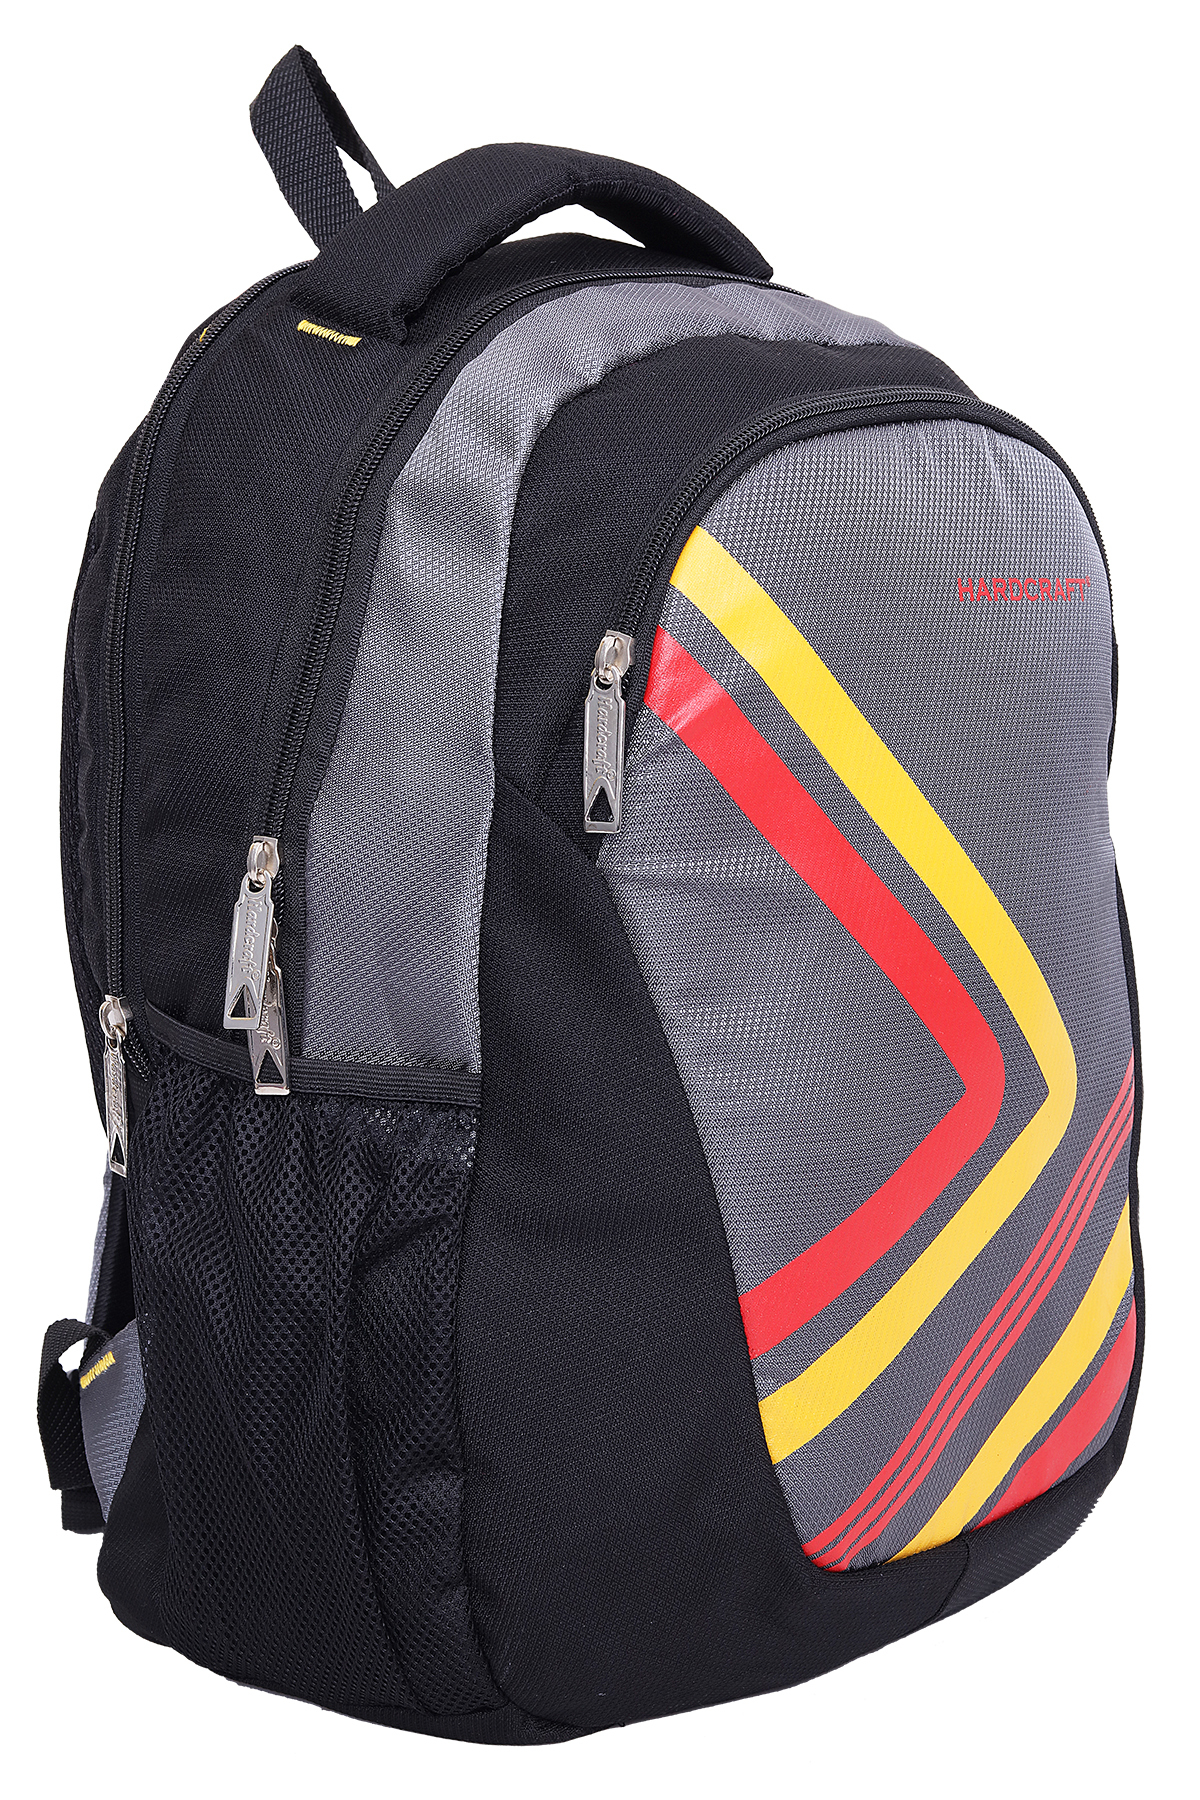 Hard Craft Unisex's Backpack 15inch Laptop Backpack Lightweight (Grey-Black)